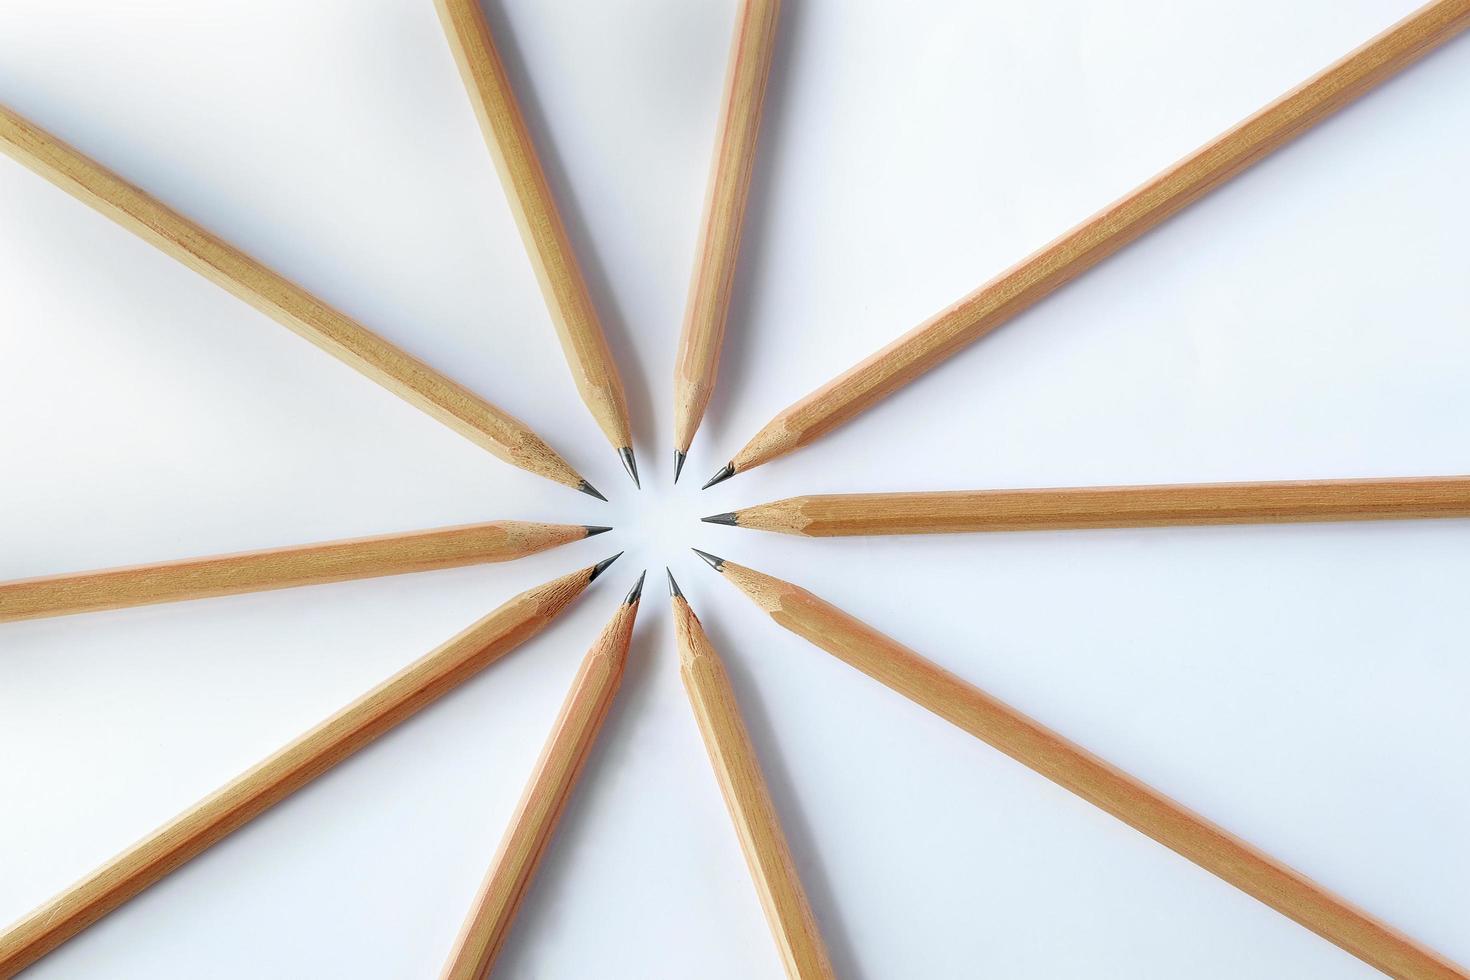 gruppo di matita in legno isolato su sfondo bianco. foto